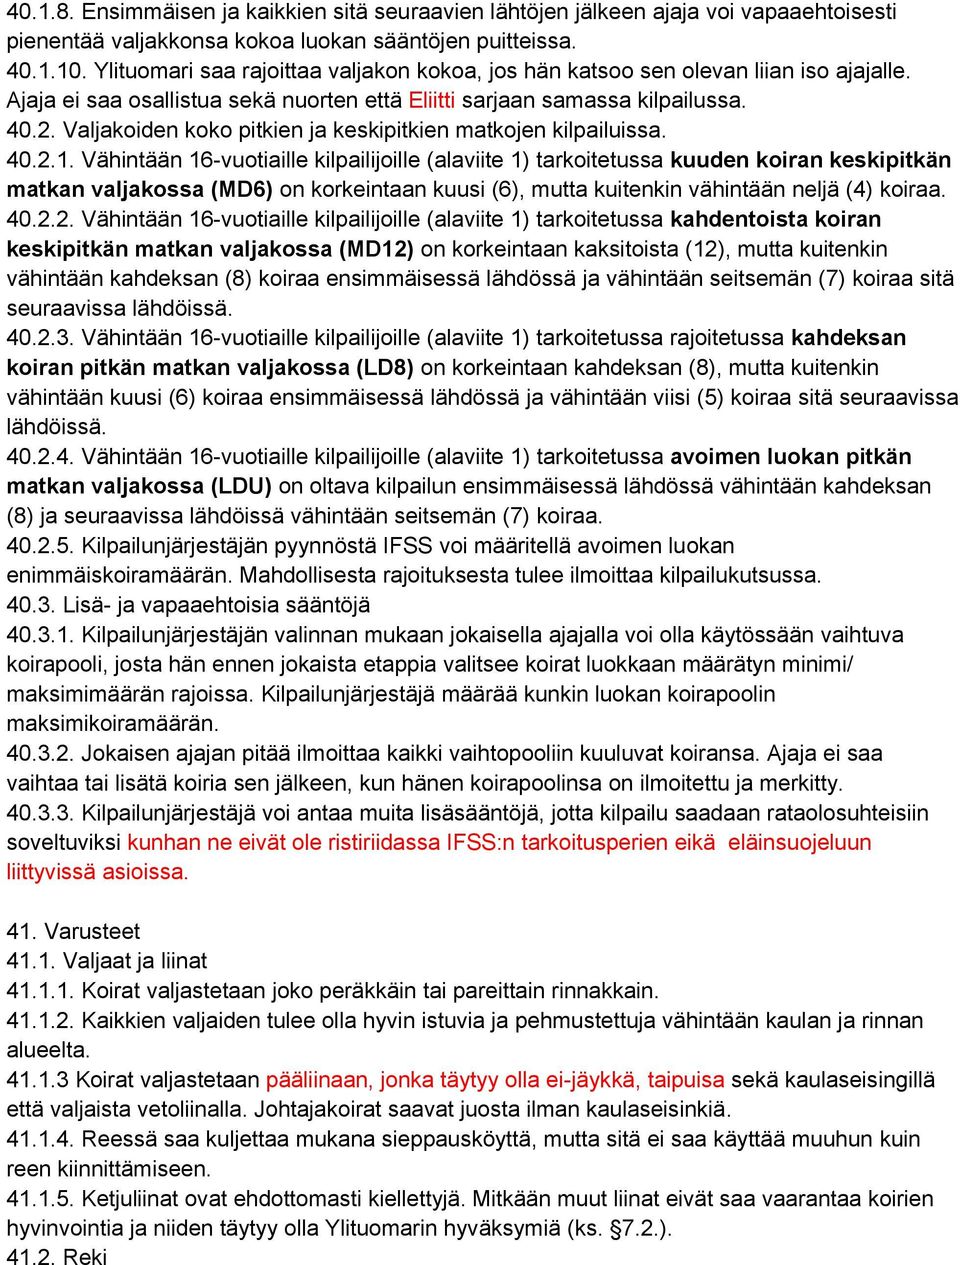 Valjakoiden koko pitkien ja keskipitkien matkojen kilpailuissa. 40.2.1.